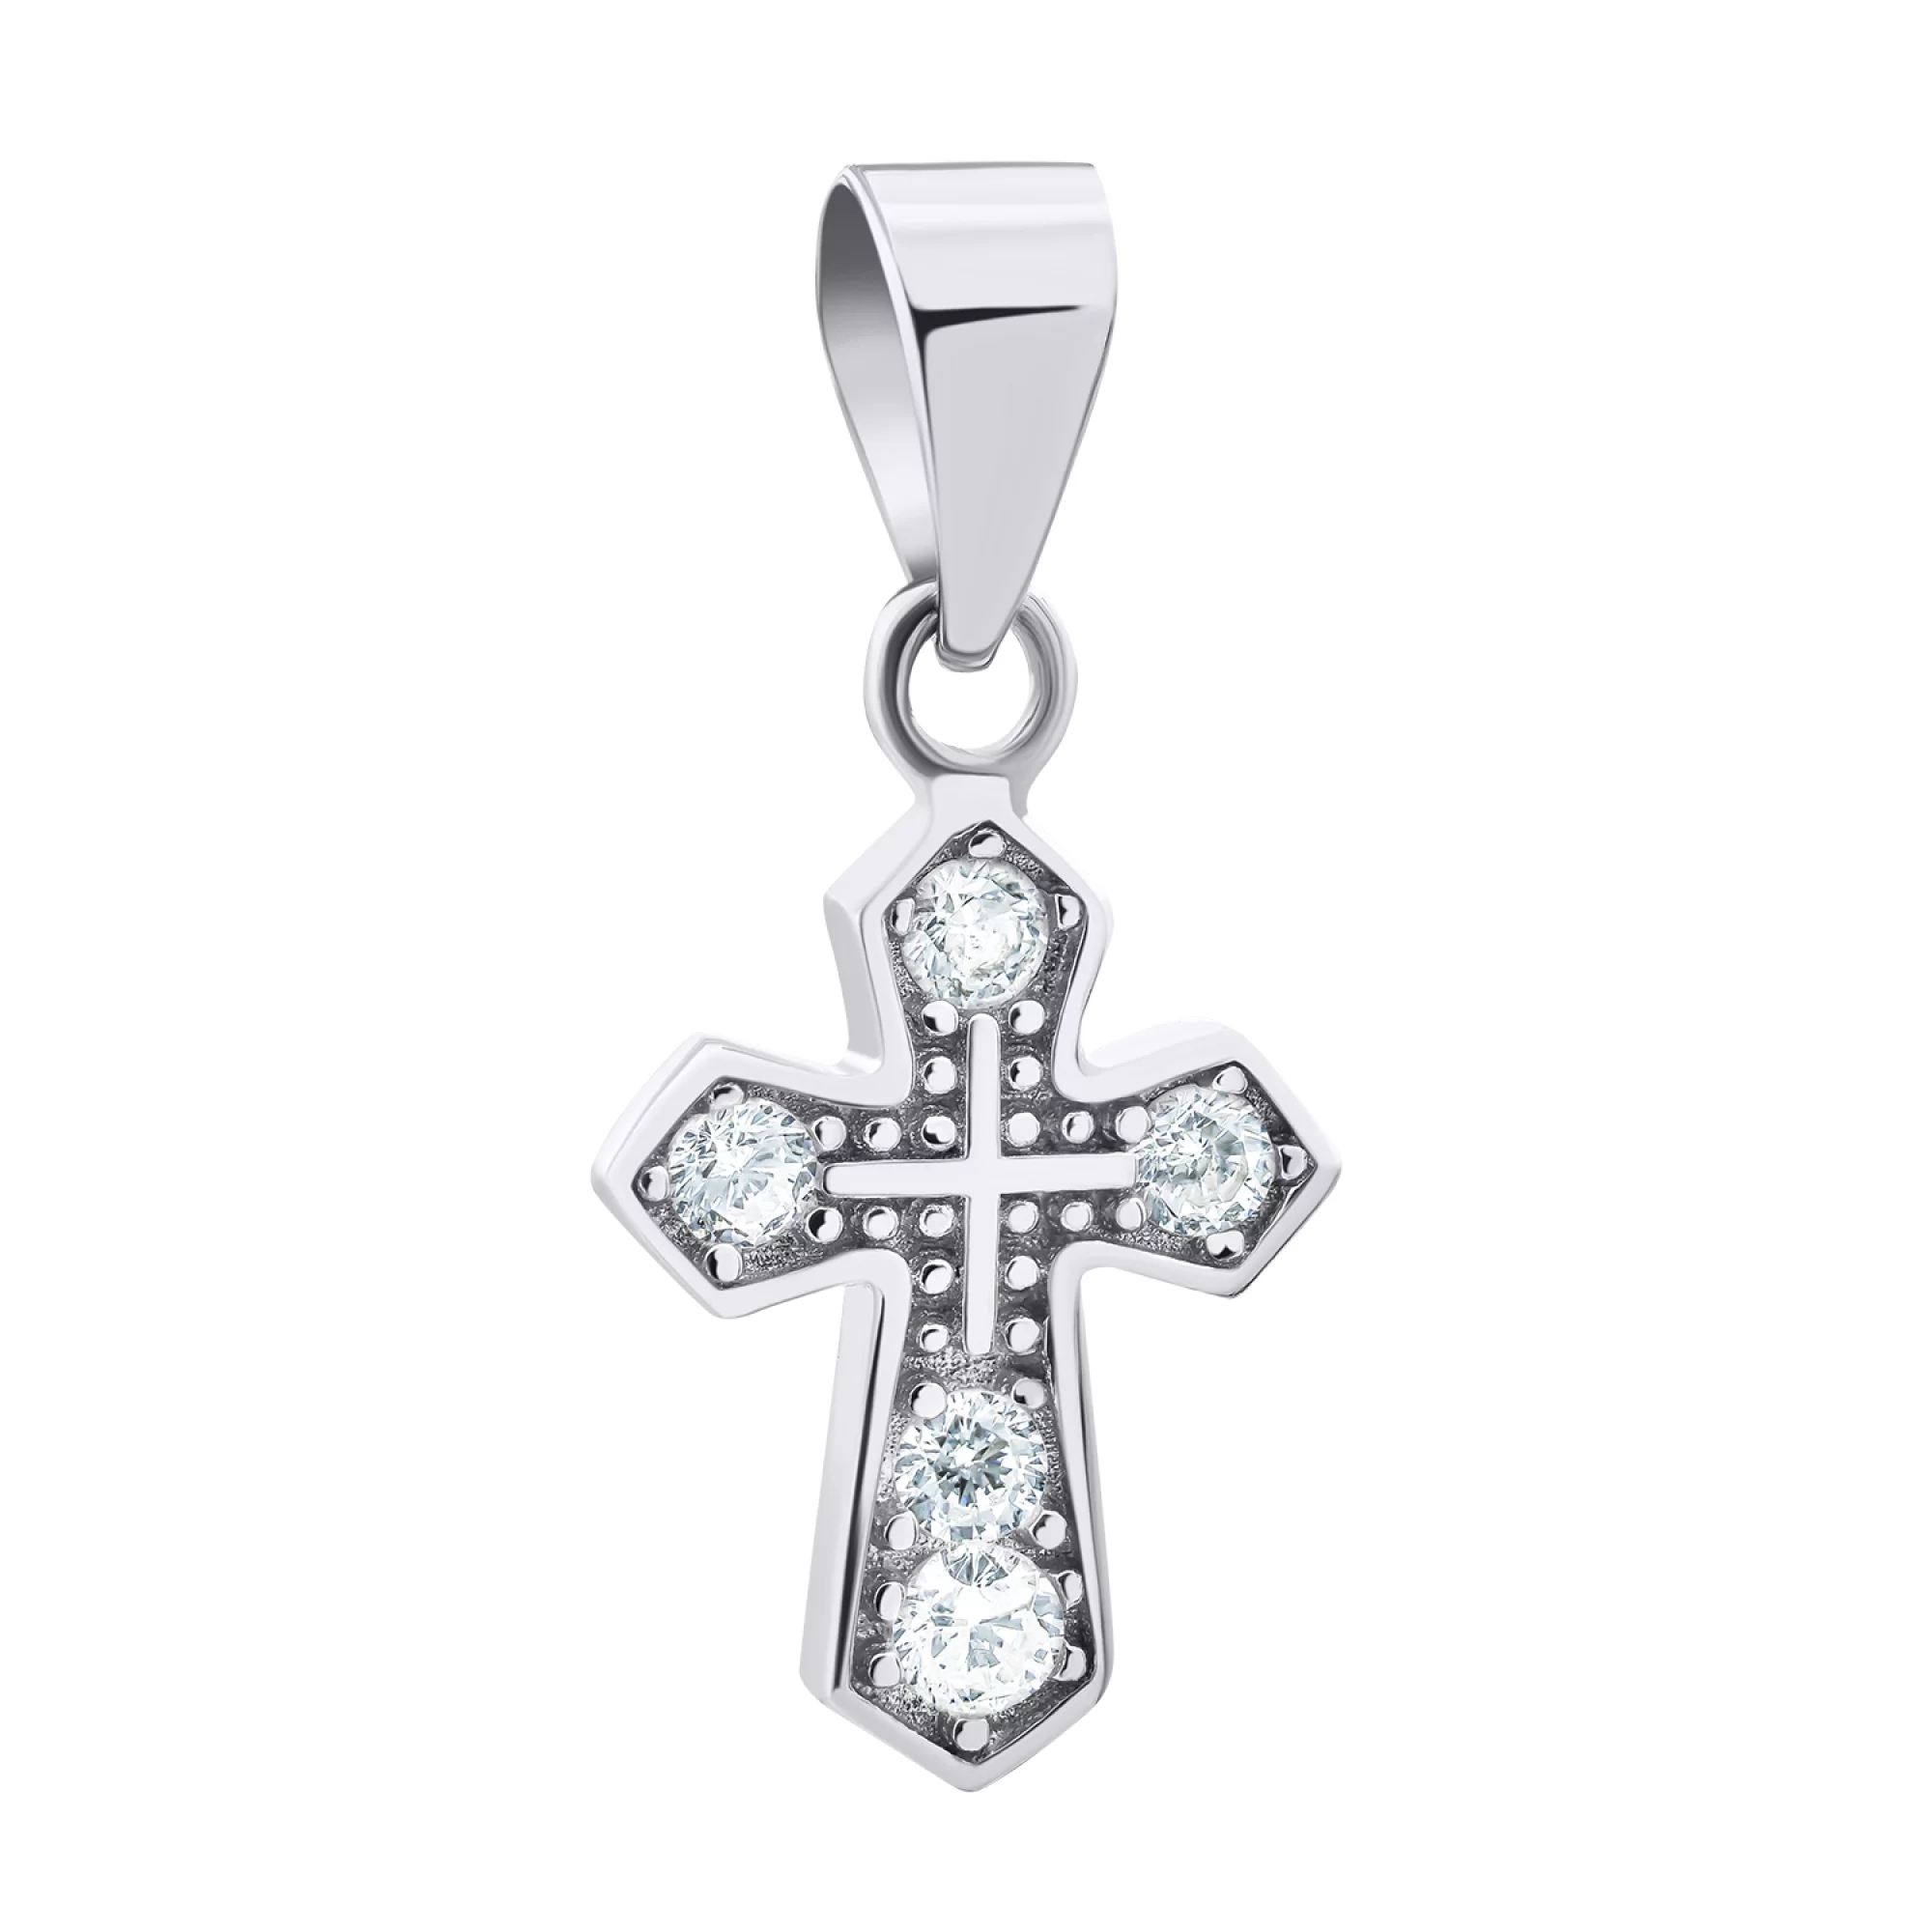 Декоративный крестик из серебра с фианитами - 1521070 – изображение 1